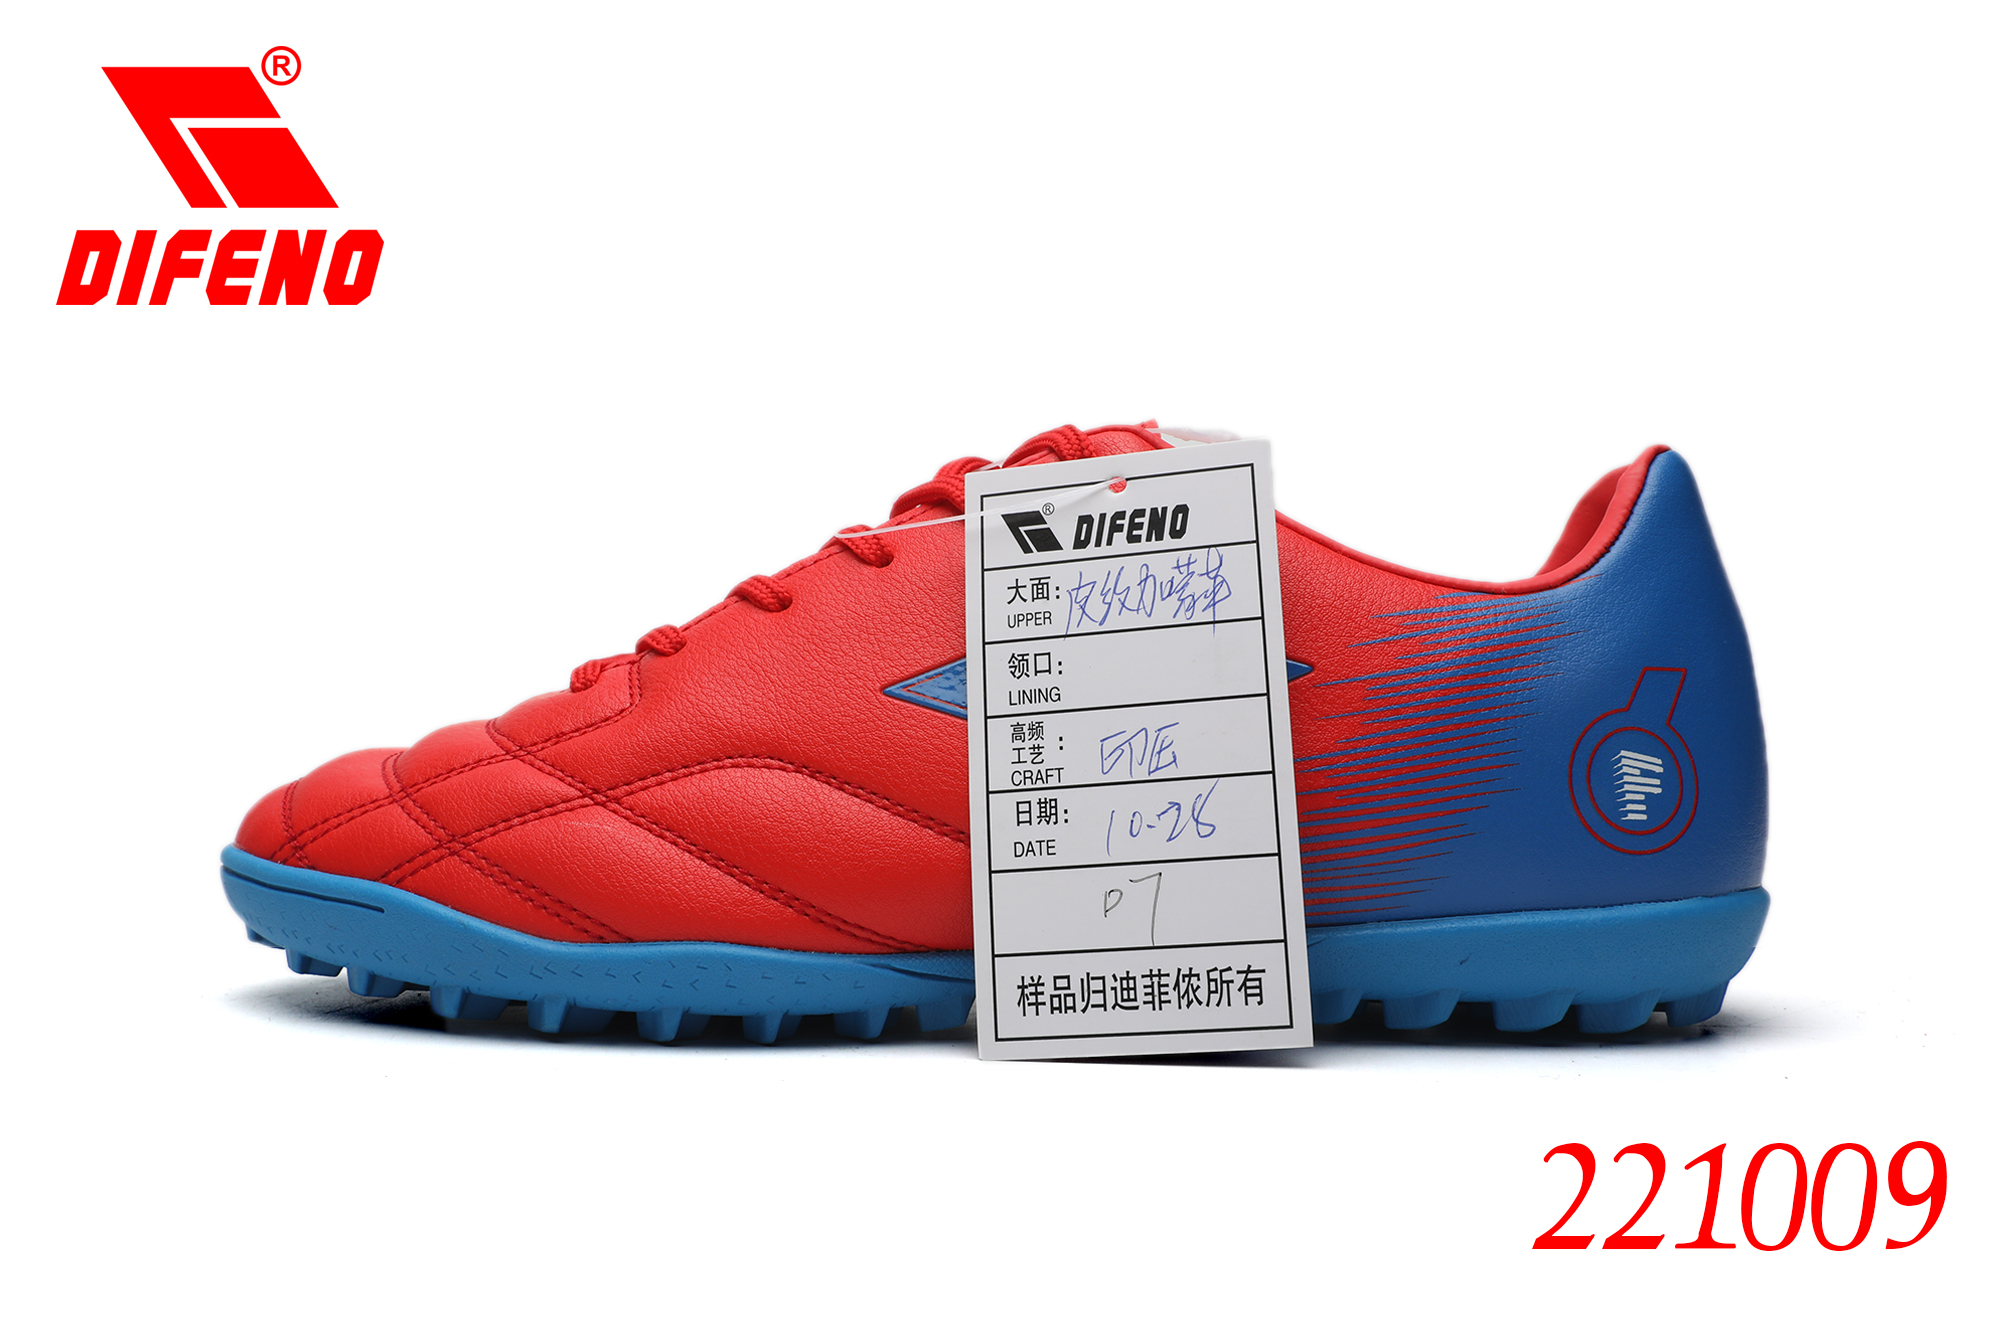 Këpucë futbolli DIFENO për meshkuj të jashtëm dhe të brendshëm për të rinj dhe të rritur – Këpucë futbolli AG prej lëkure mikrofibër për meshkuj Imazhi i veçuar